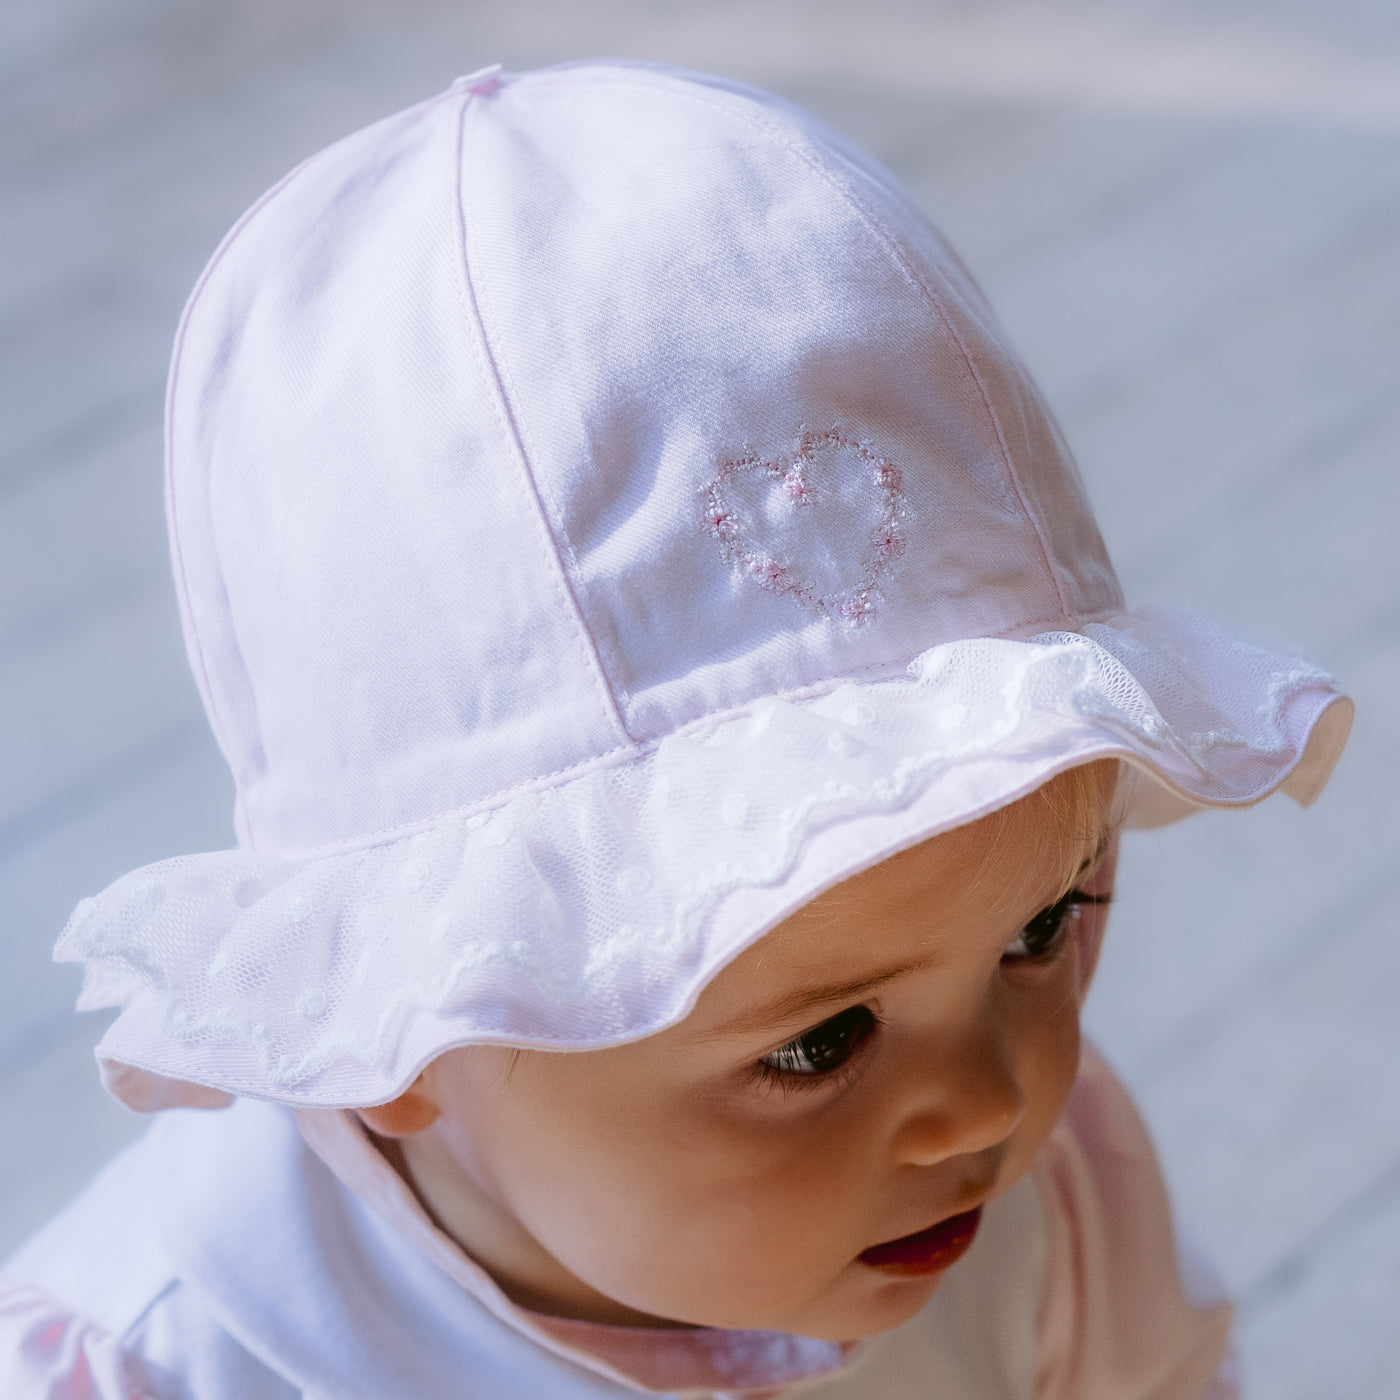 Florrie Pink Baby Girls Sun Hat